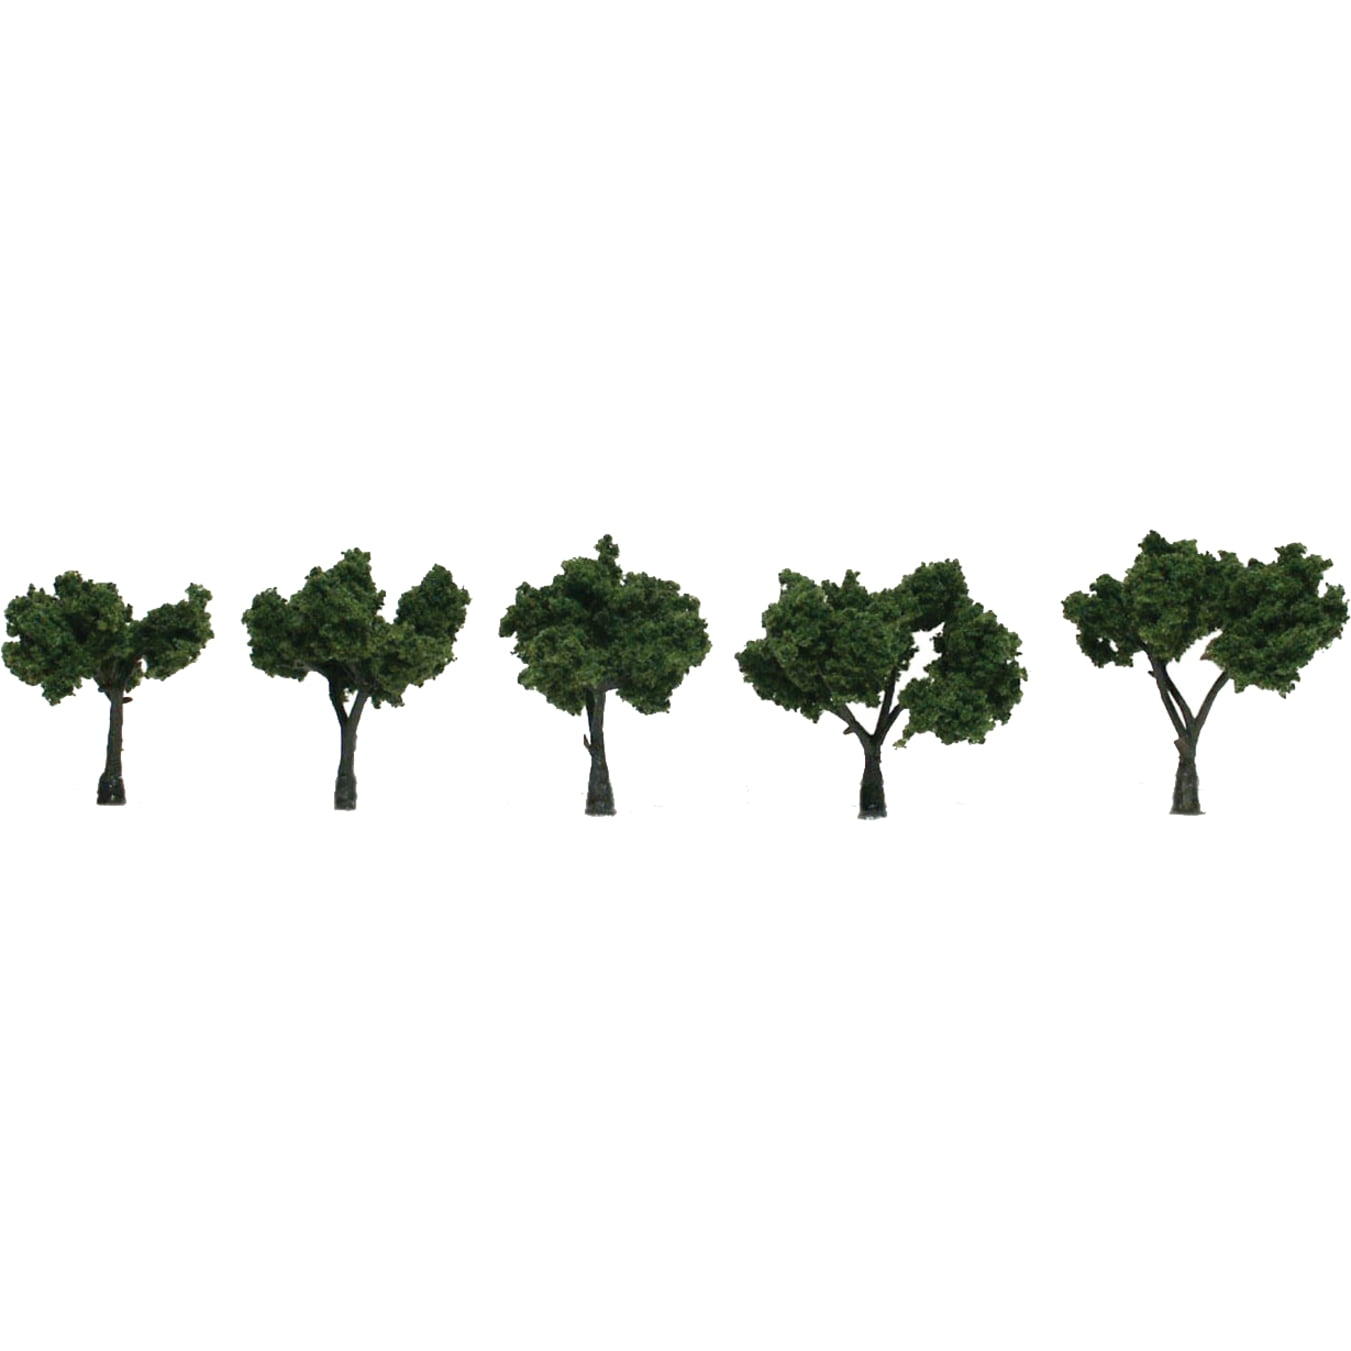 TR1101 Woodland Scenics Tree Kits 3/4x3 36 